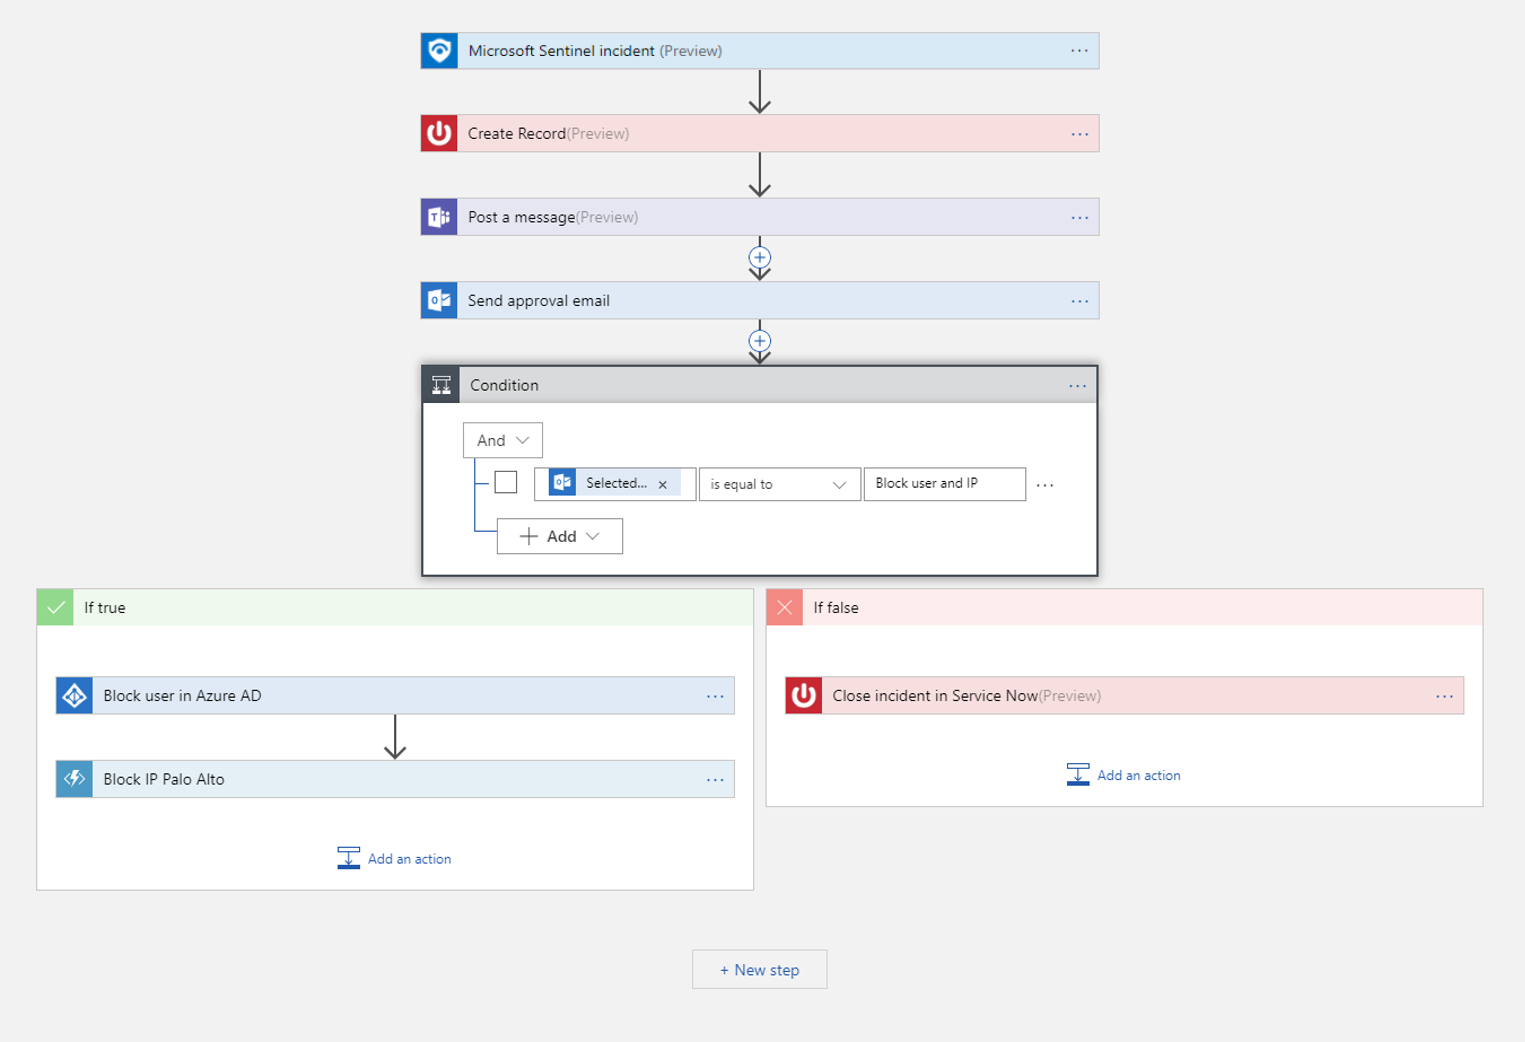 Azure 逻辑应用中的示例自动化工作流的屏幕截图，其中事件可以触发不同的操作。